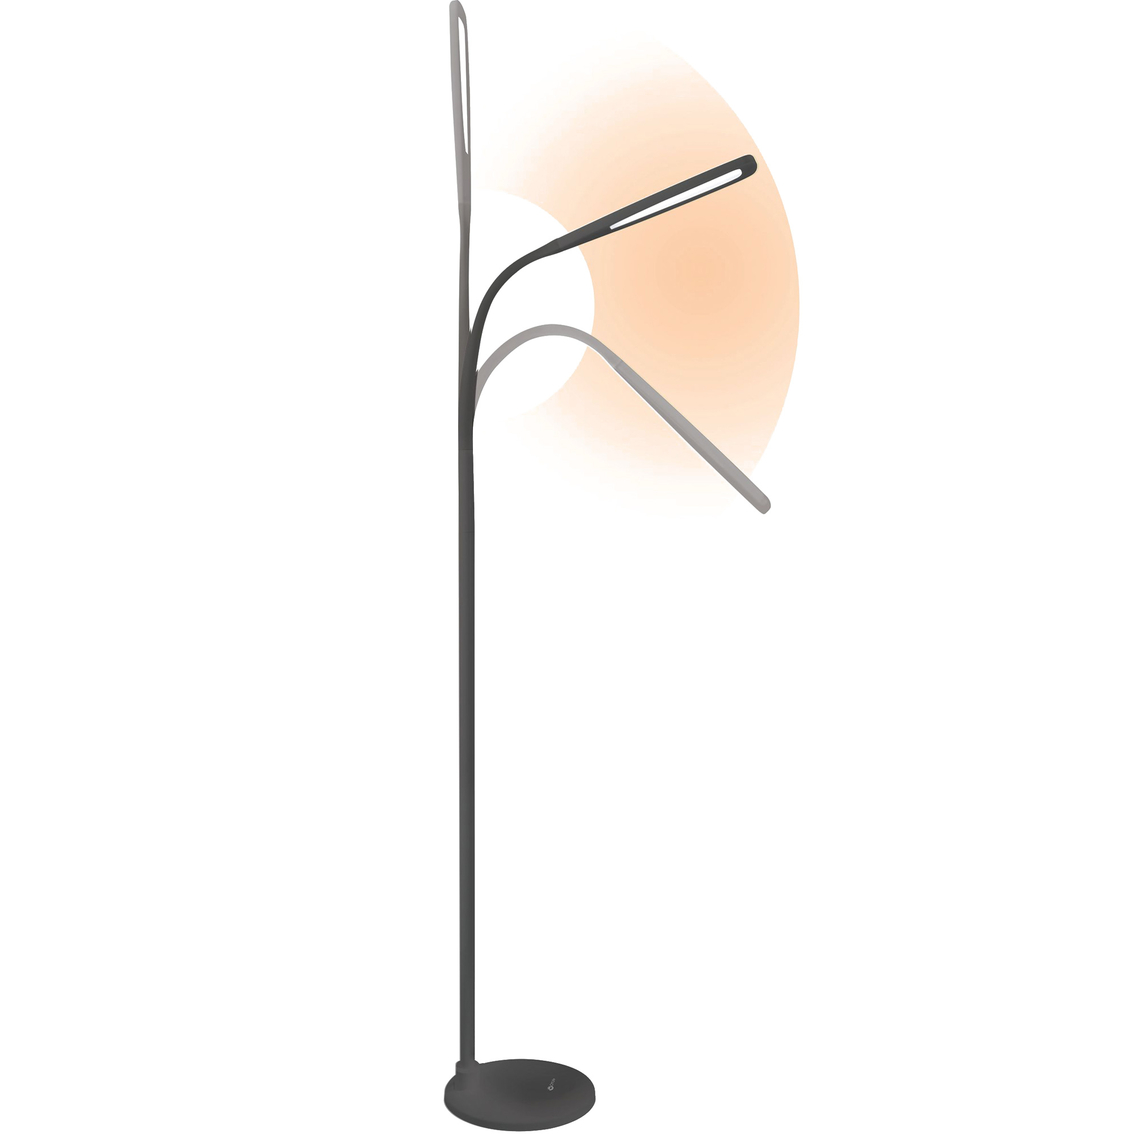 OttLite Natural Daylight LED Flex 71 in. Floor Lamp - Image 4 of 4